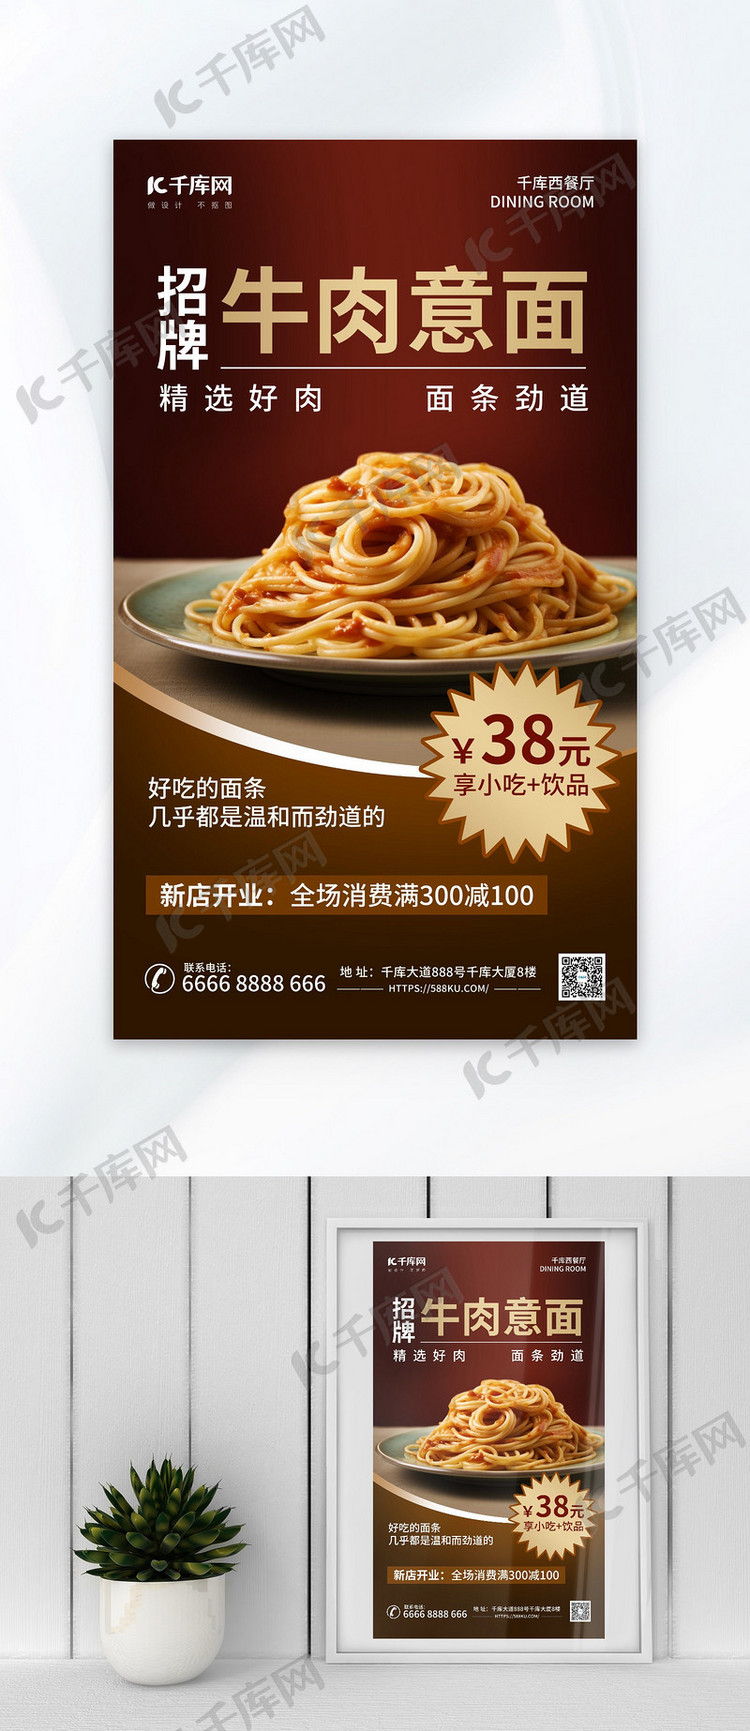 西餐意大利面暗色AIGC模板广告营销海报